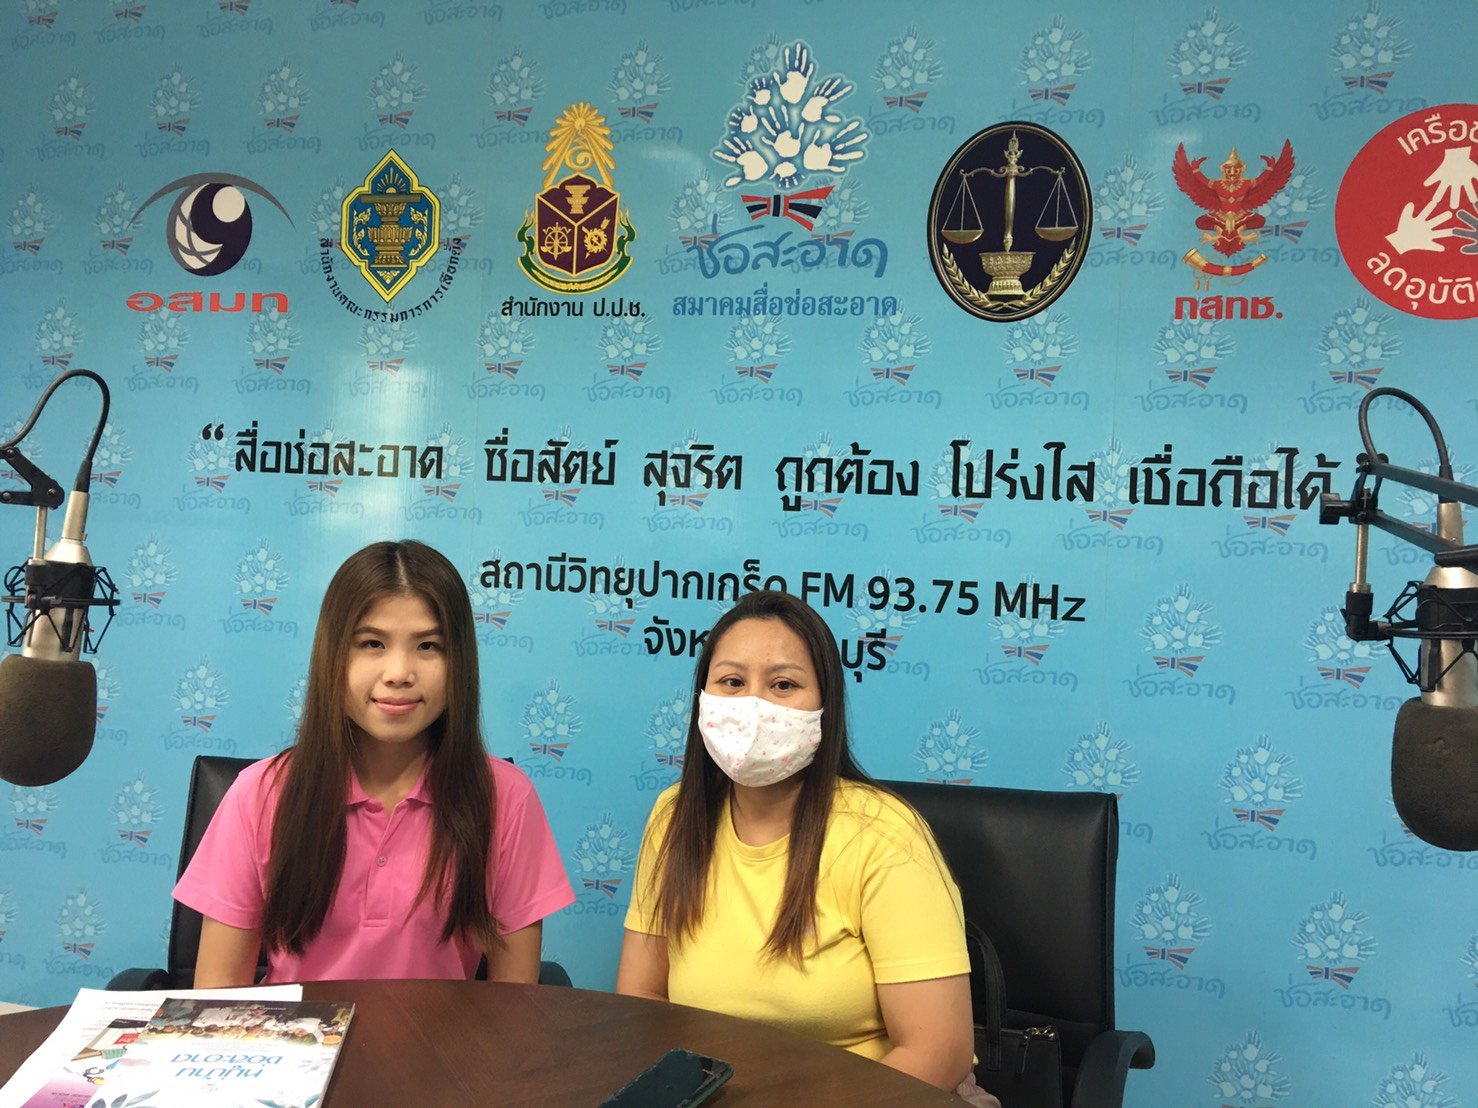 รายการ “คนไทยไม่ทนต่อการทุจริต” วันอาทิตย์ที่ 7 กุมภาพันธ์ 2564 เวลา 18.30-19.00 น.